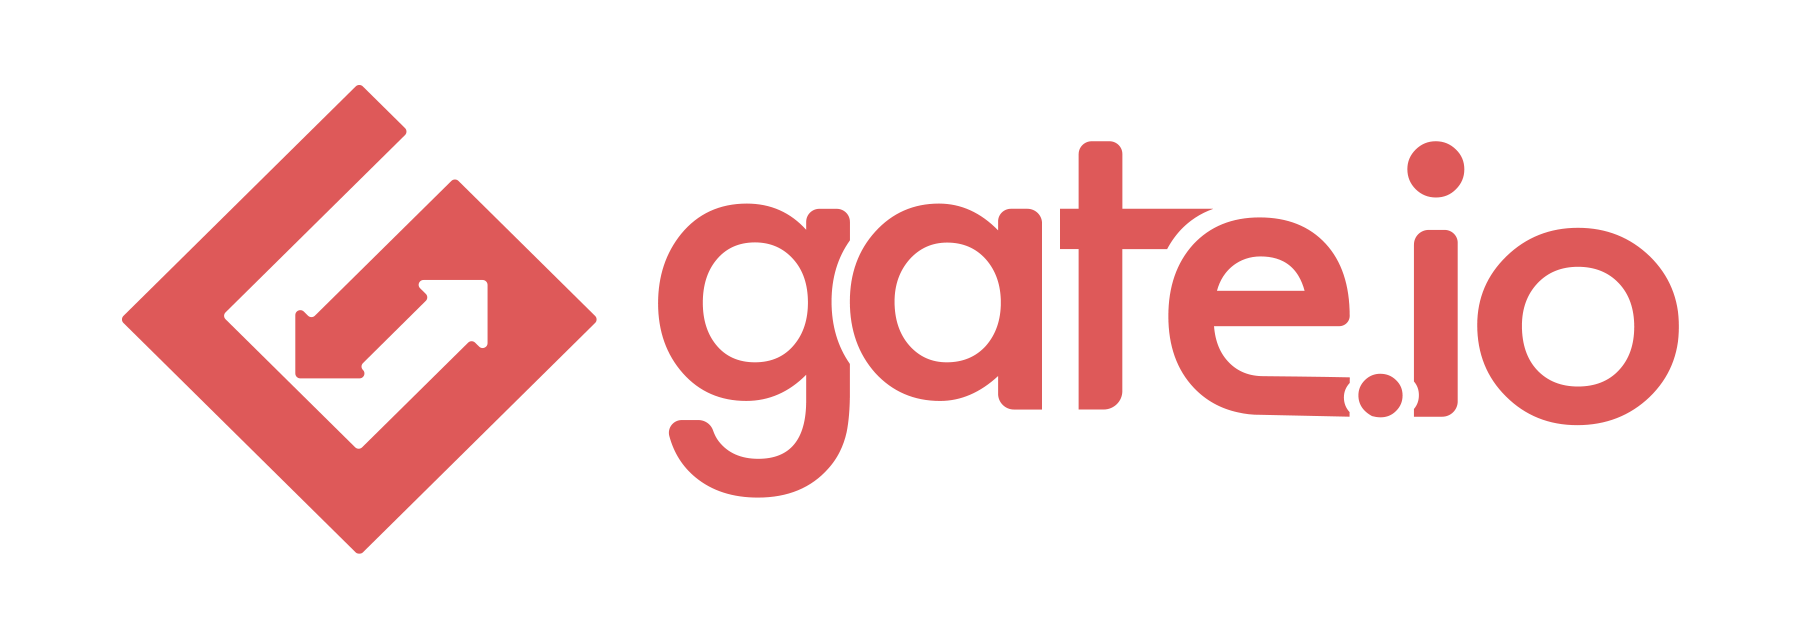 
            Gate.io-logo